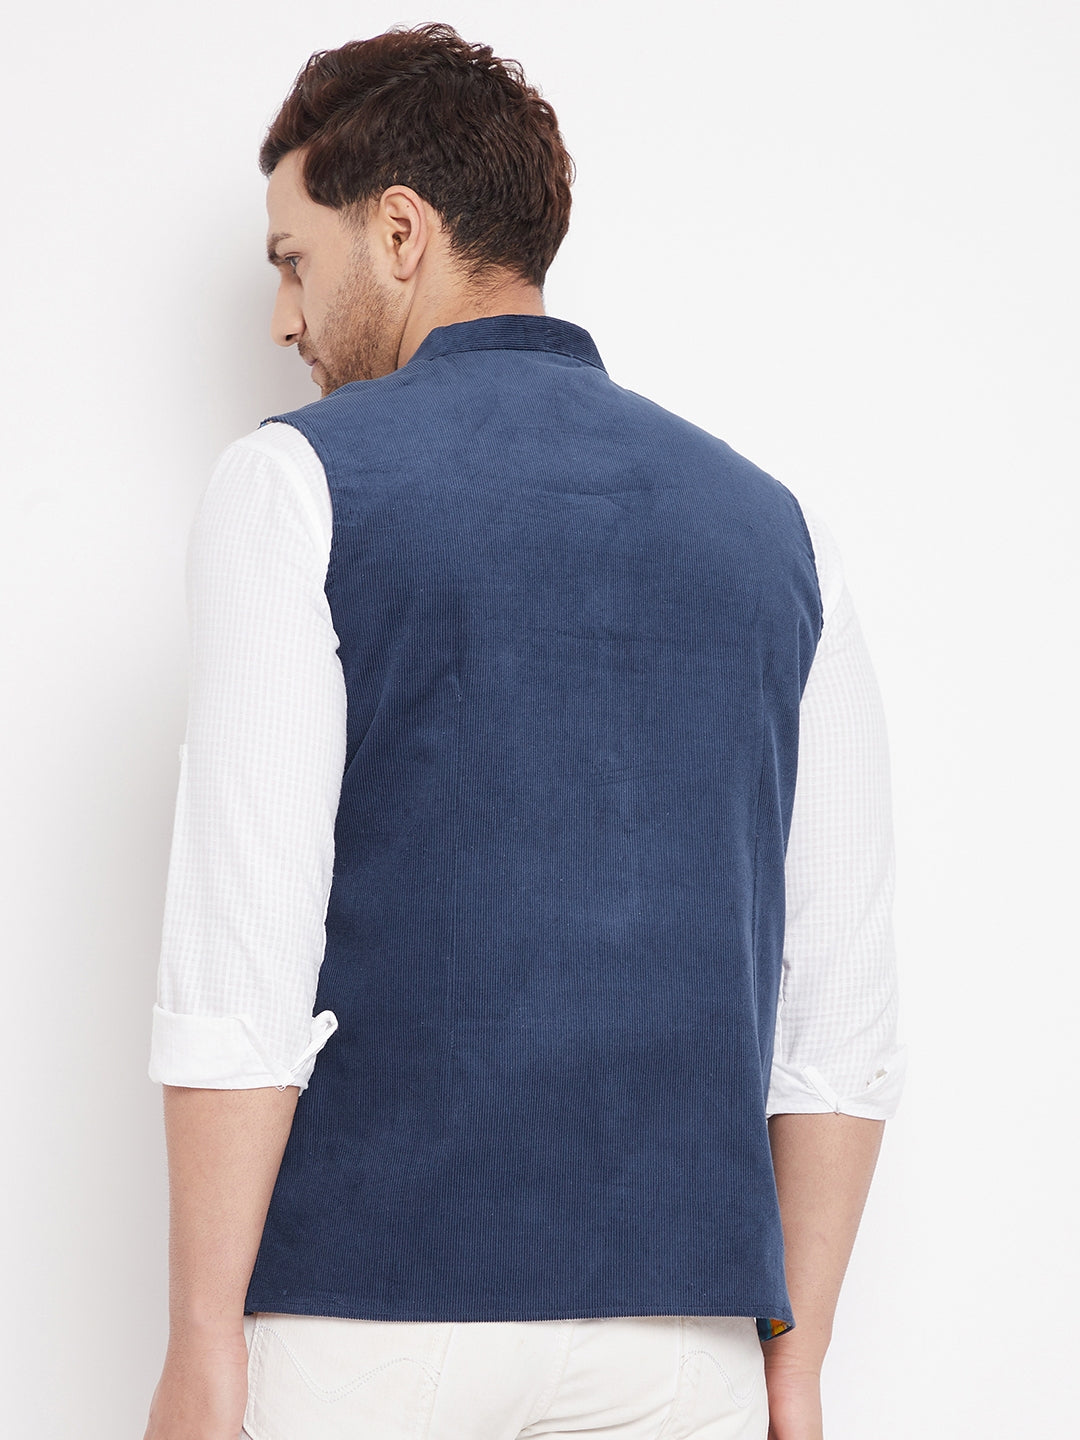 Men's Blue Color Nehru Jacket-Contrast Lining-Inbuilt Pocket Square - Even Apparels